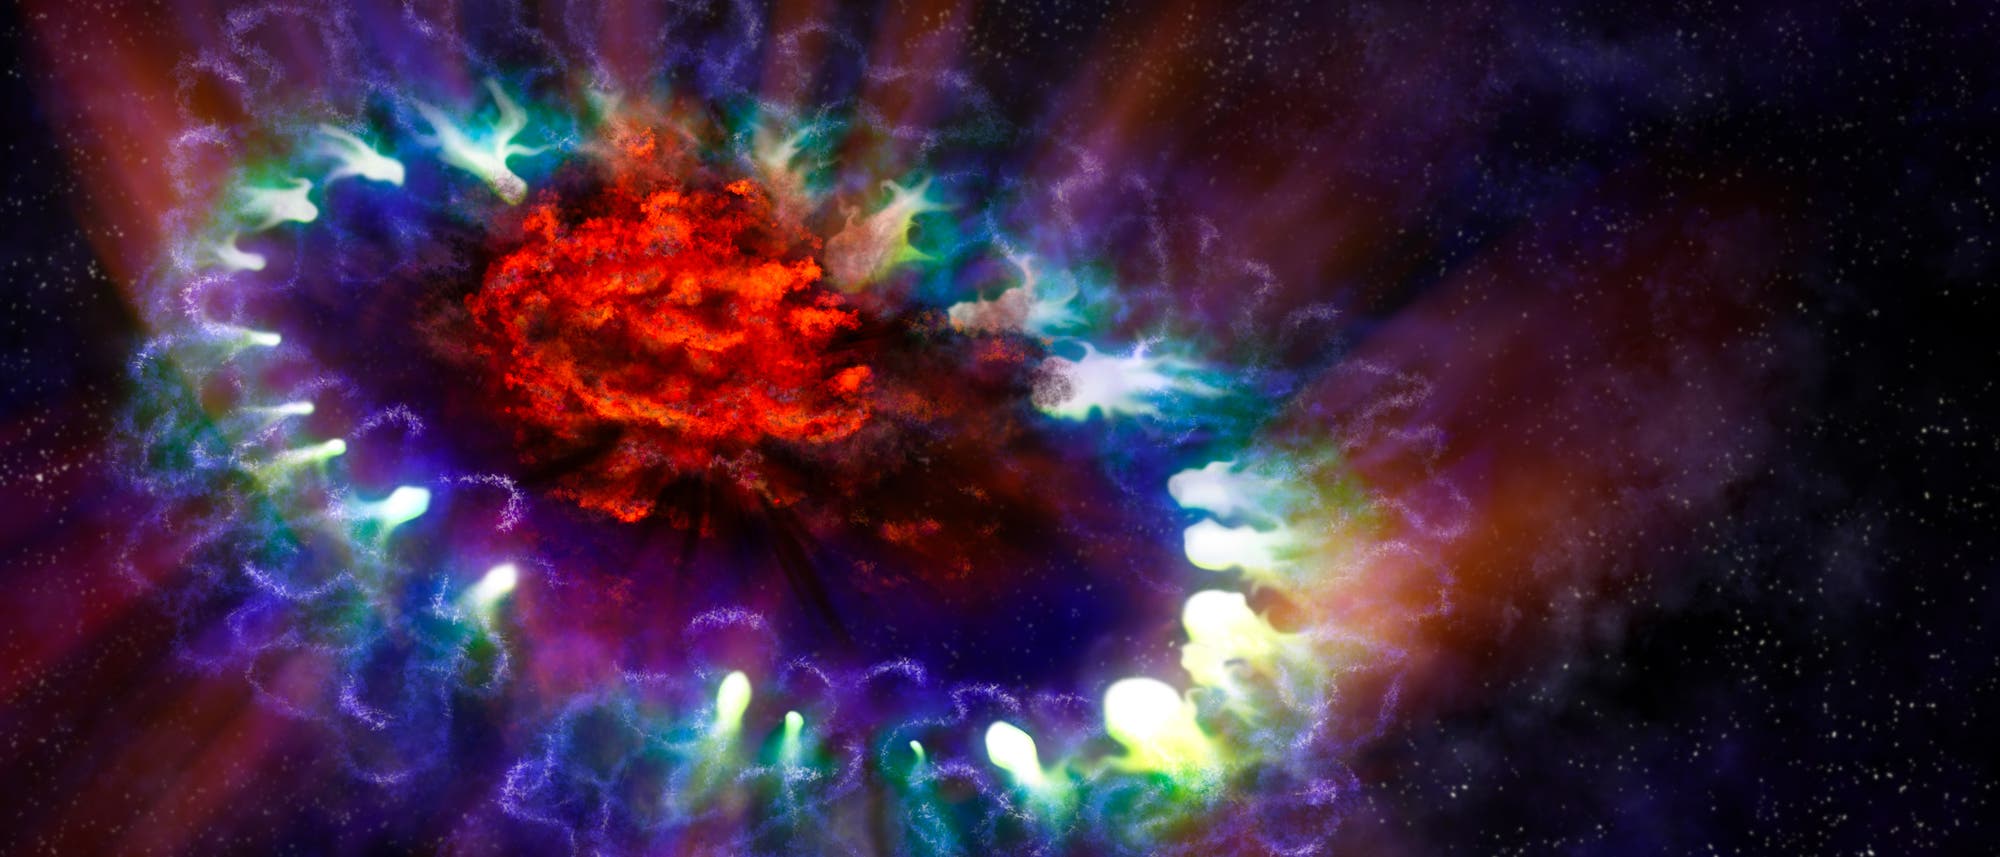 Eine künstlerische Darstellung der Supernova SN 1987A.